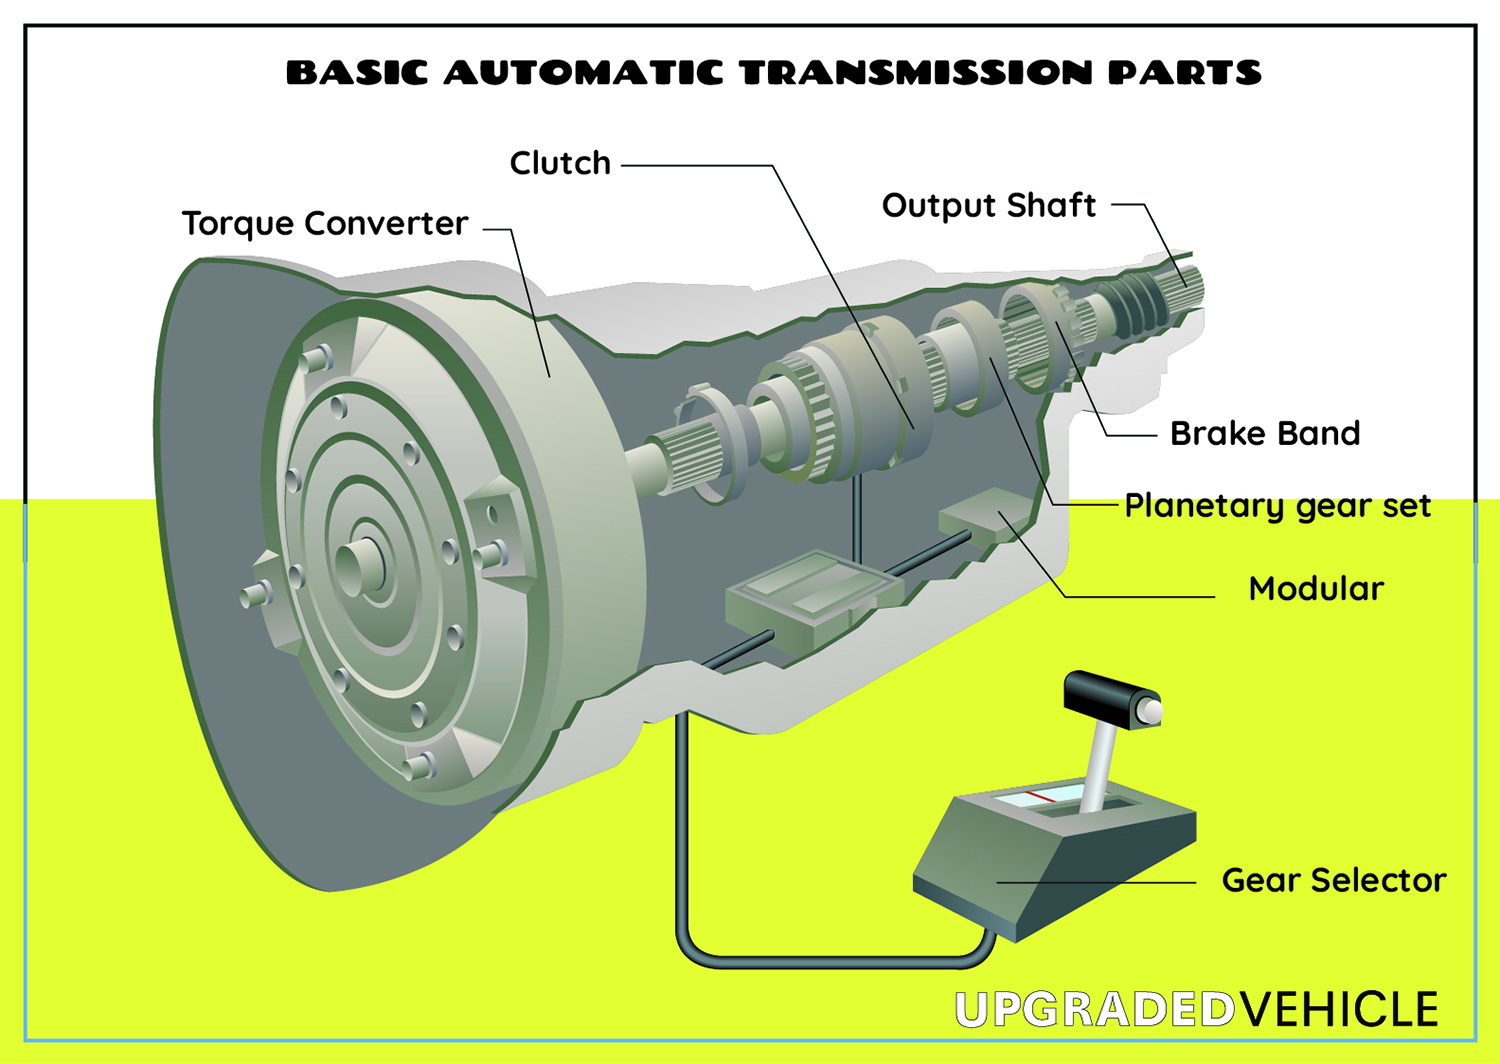 Basic Automatic Transmission Parts